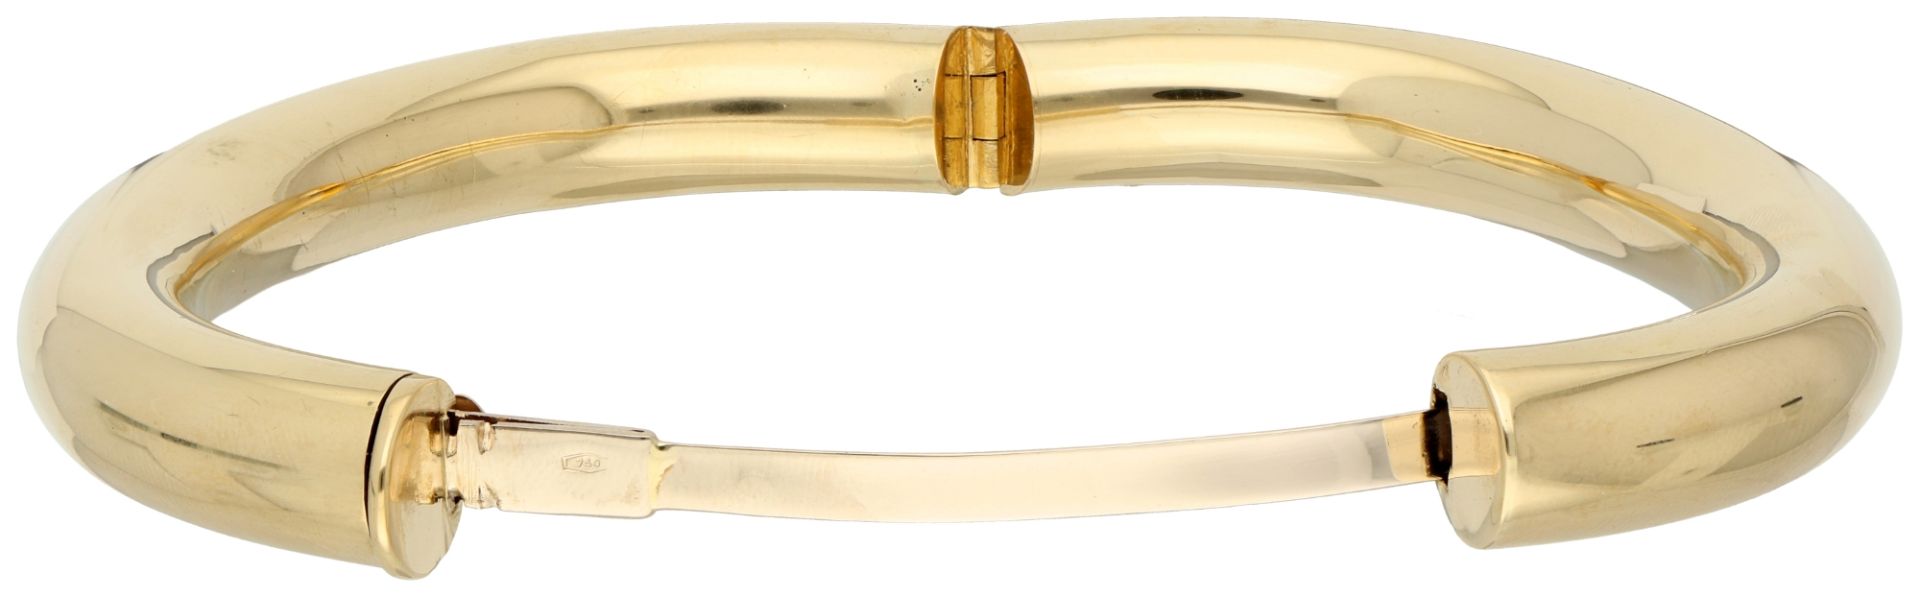 18K Yellow gold bangle bracelet. - Image 2 of 2